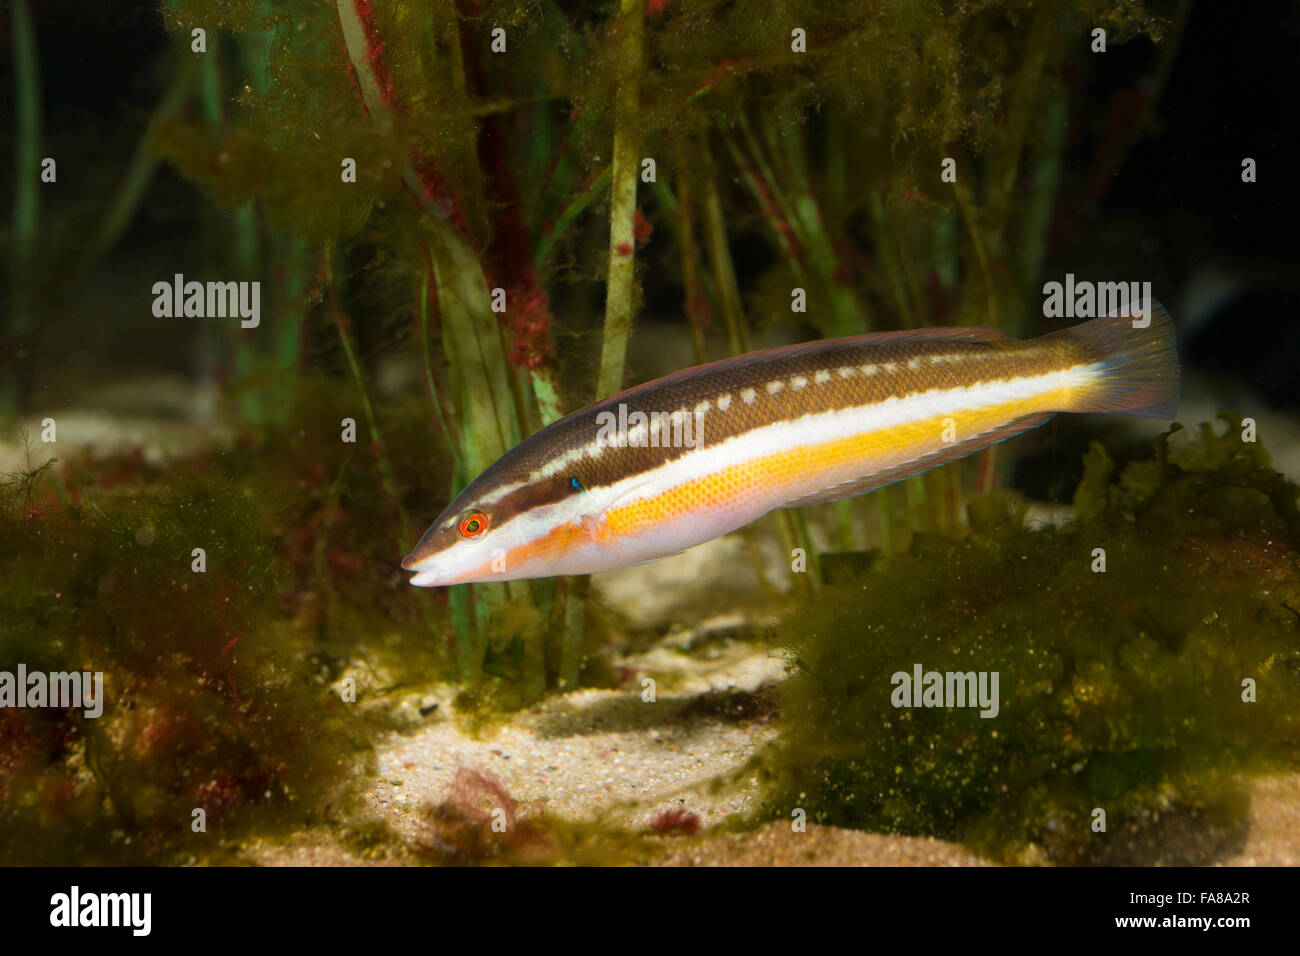 Mediterranean rainbow wrasse, rainbowfish, female, Meerjunker, Mittelmeer-Junker, Weibchen, Coris julis, Labrus julis Stock Photo